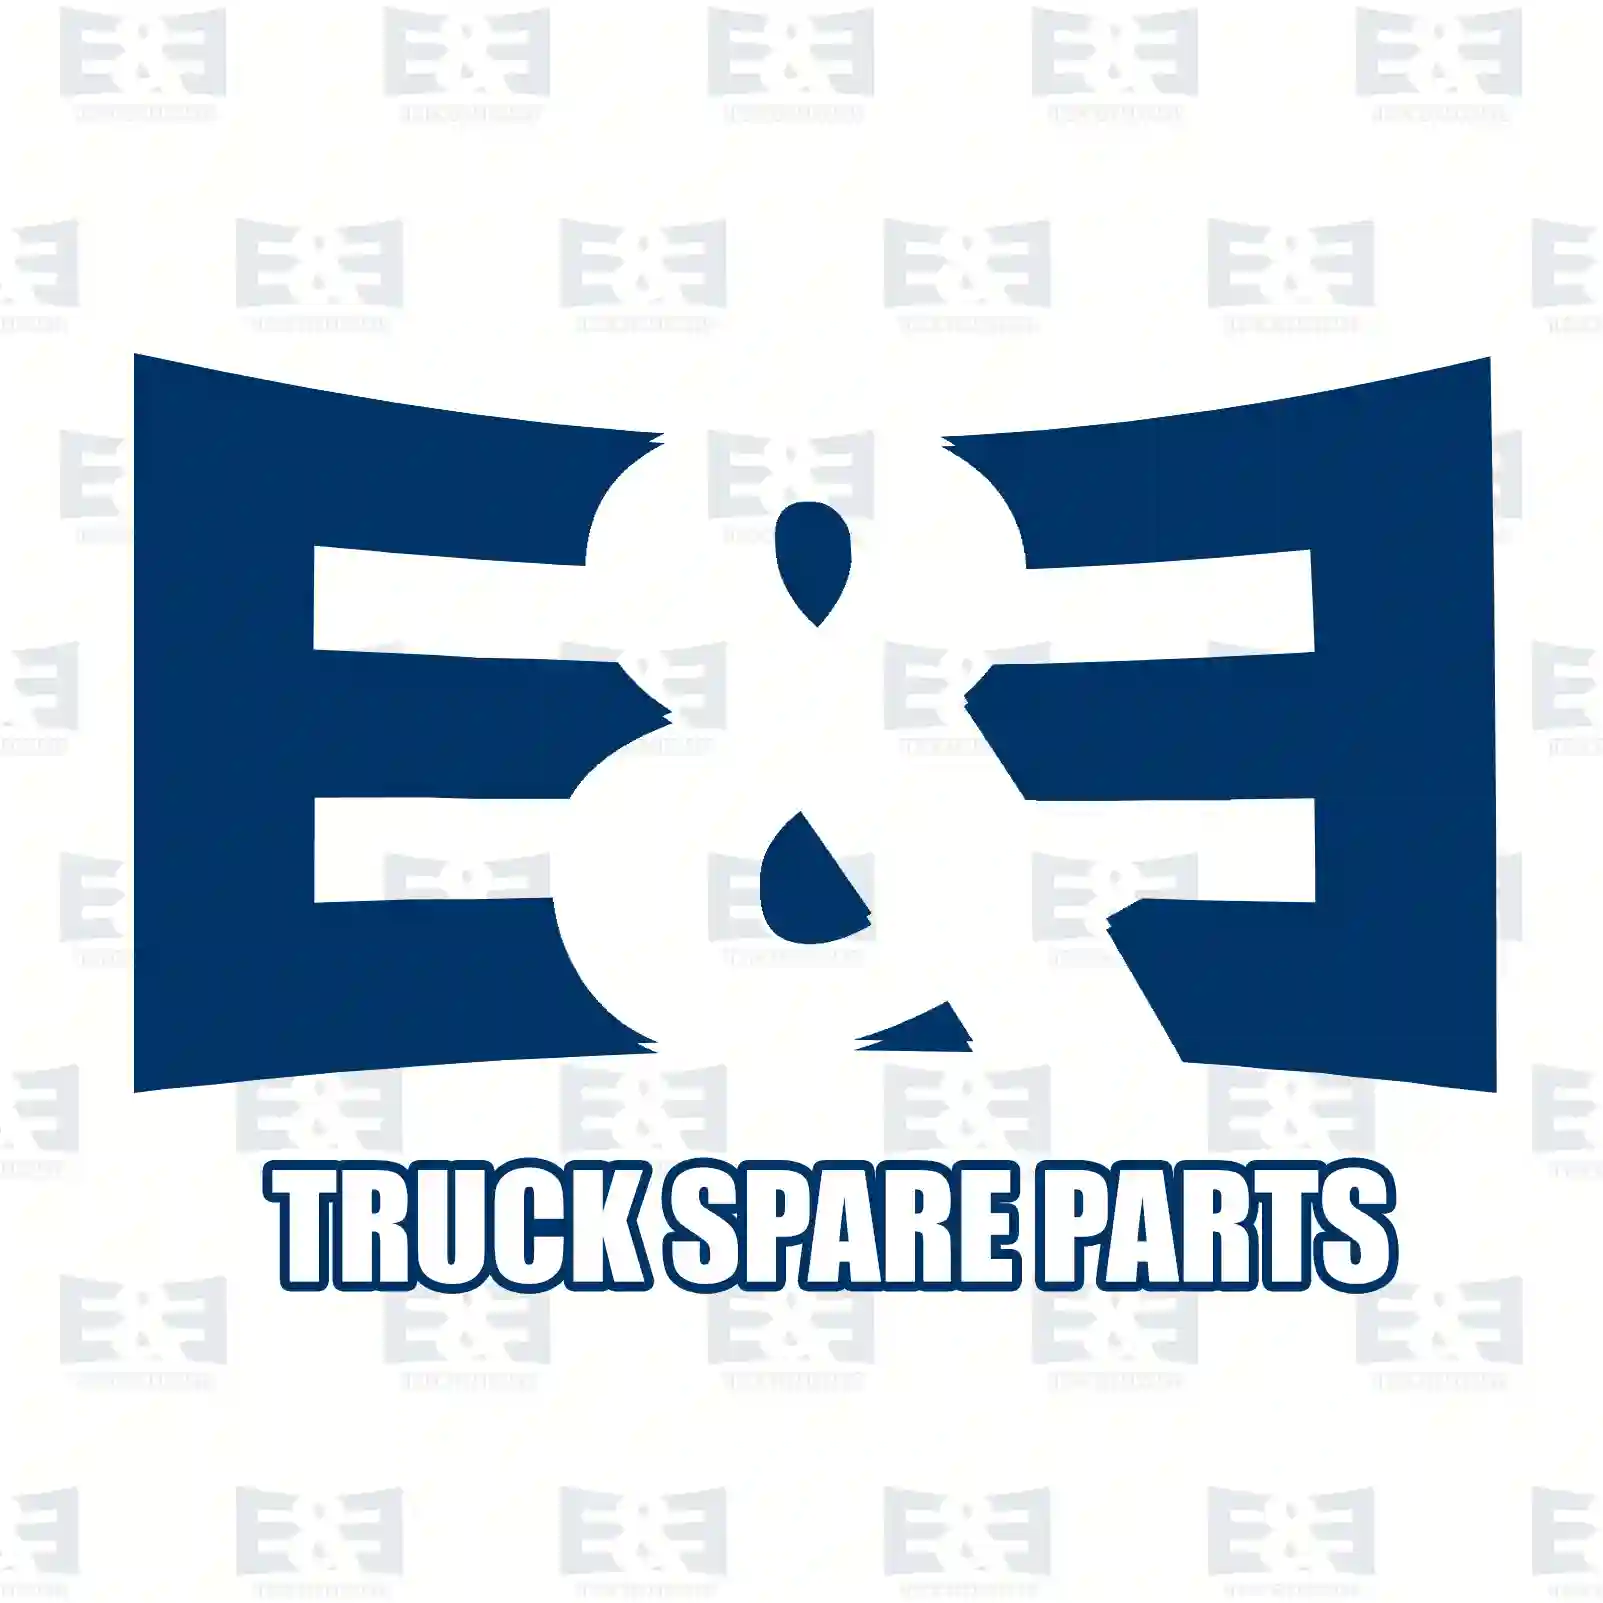 Flange screw, 2E2286889, 7403184837, 812527, 3184837 ||  2E2286889 E&E Truck Spare Parts | Truck Spare Parts, Auotomotive Spare Parts Flange screw, 2E2286889, 7403184837, 812527, 3184837 ||  2E2286889 E&E Truck Spare Parts | Truck Spare Parts, Auotomotive Spare Parts